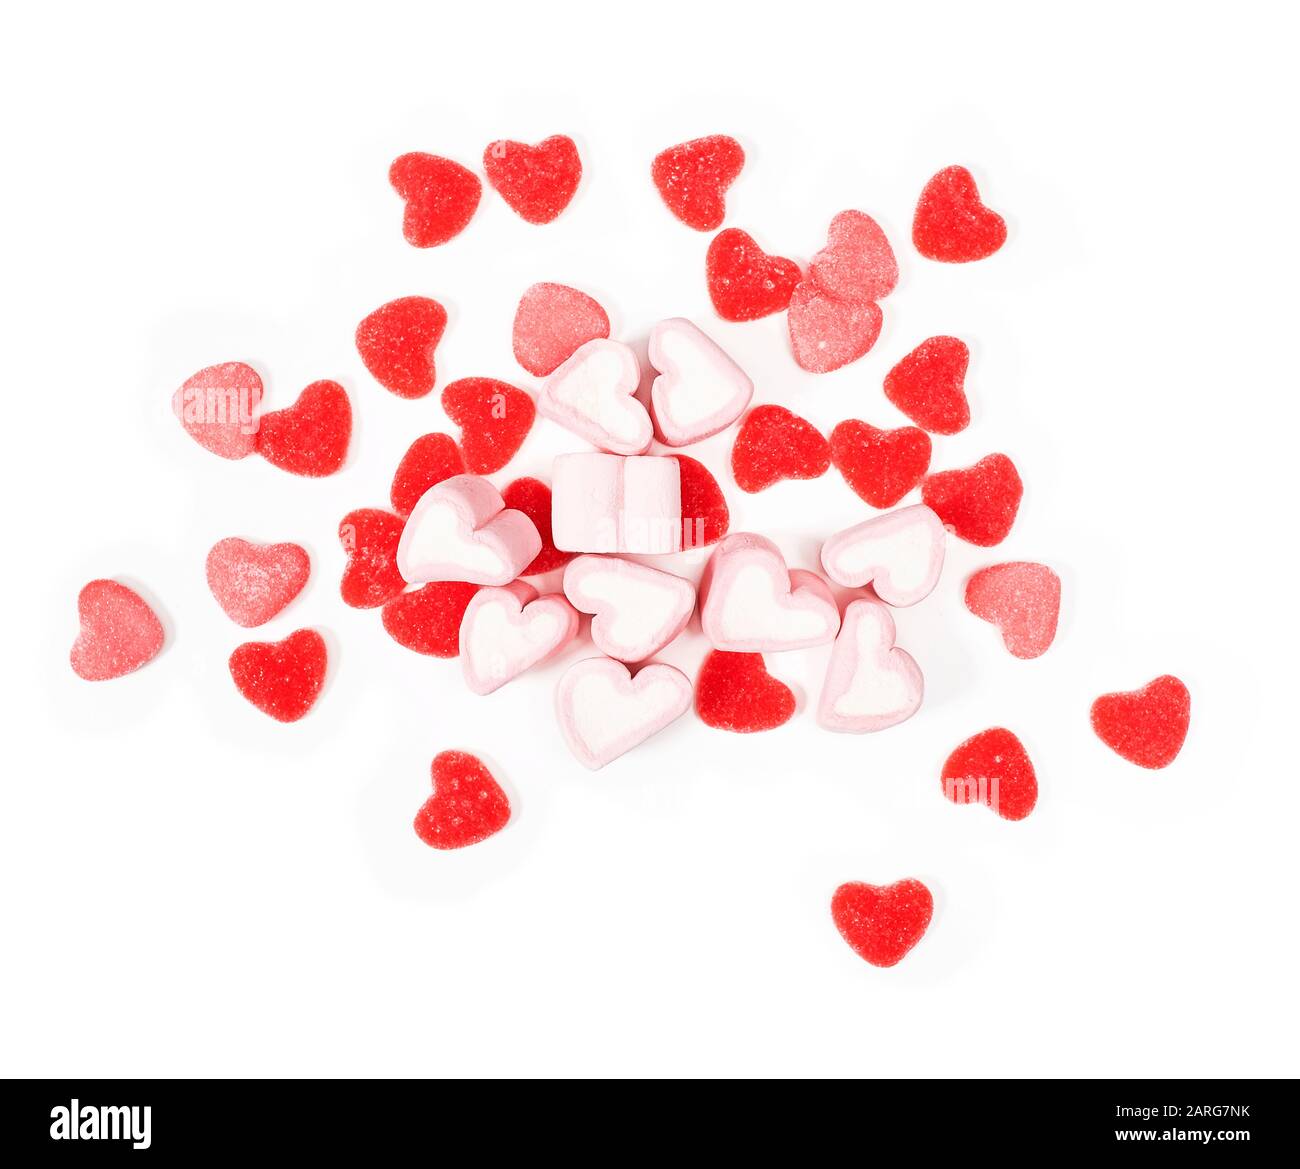 Golosinas con forma de corazón en un fondo blanco Foto de stock